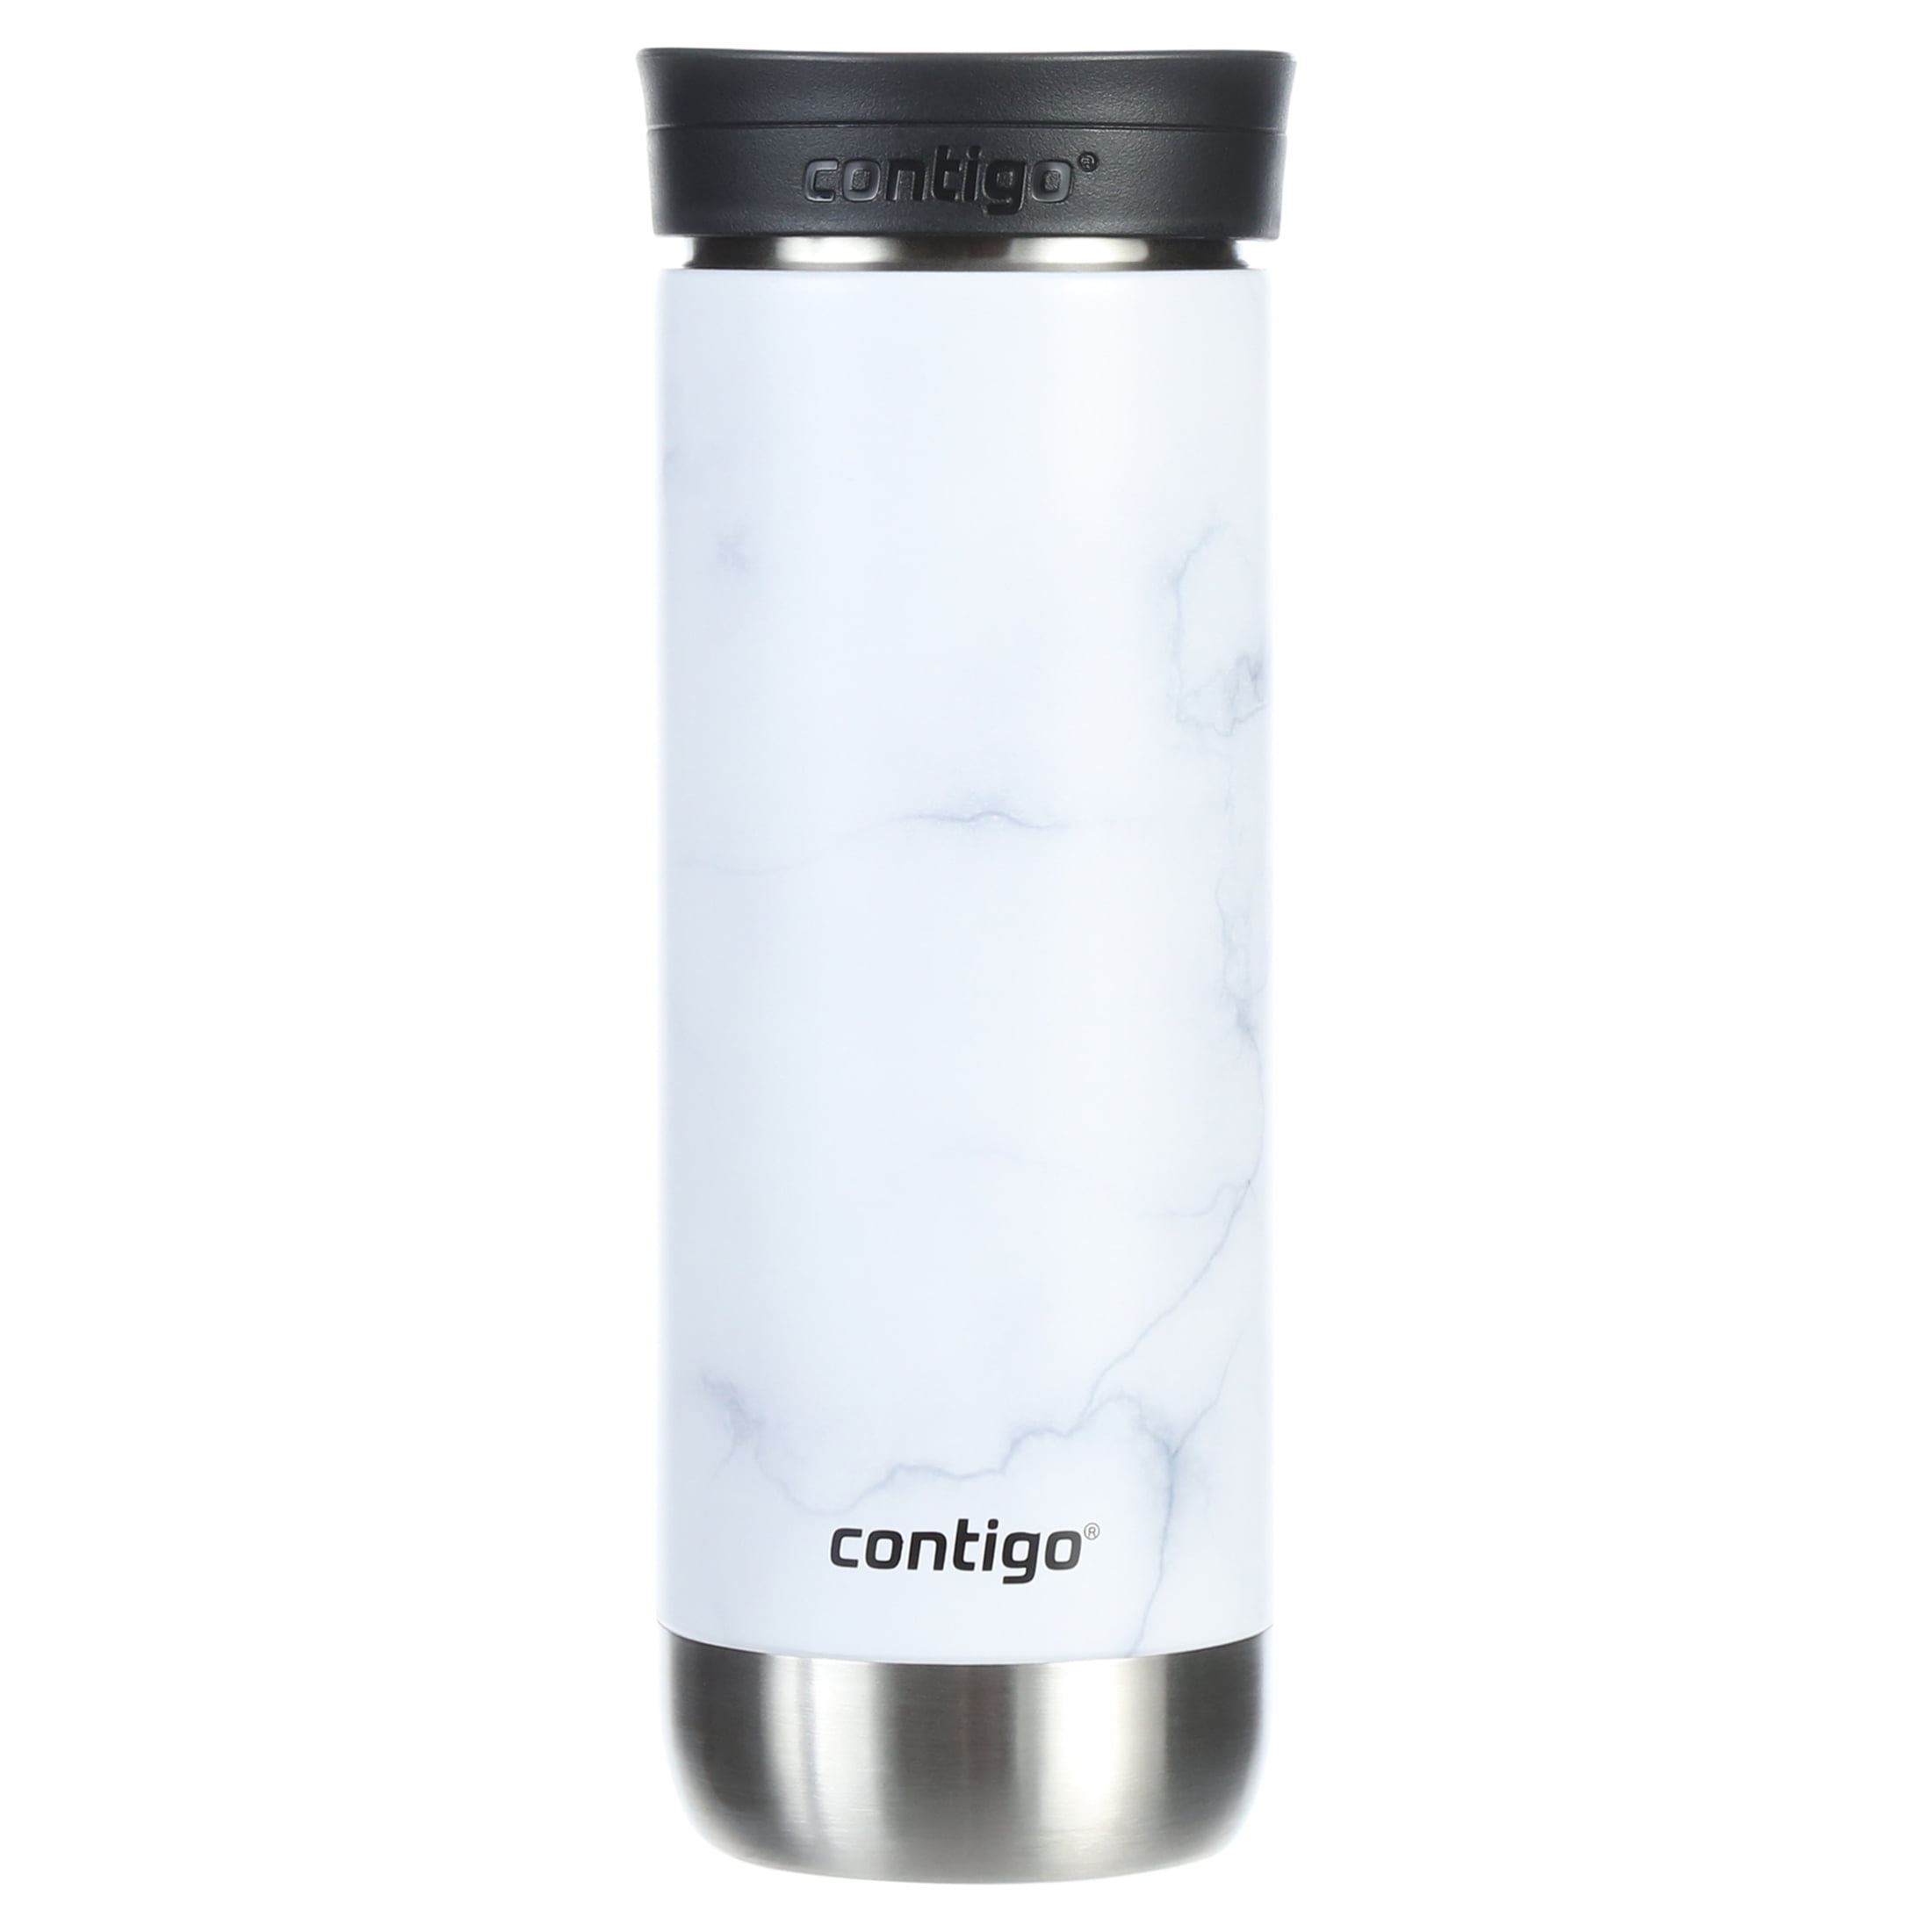 Contigo Travel Mug, Snapseal, Huron Couture 2.0, White Marble, 20 Ounce